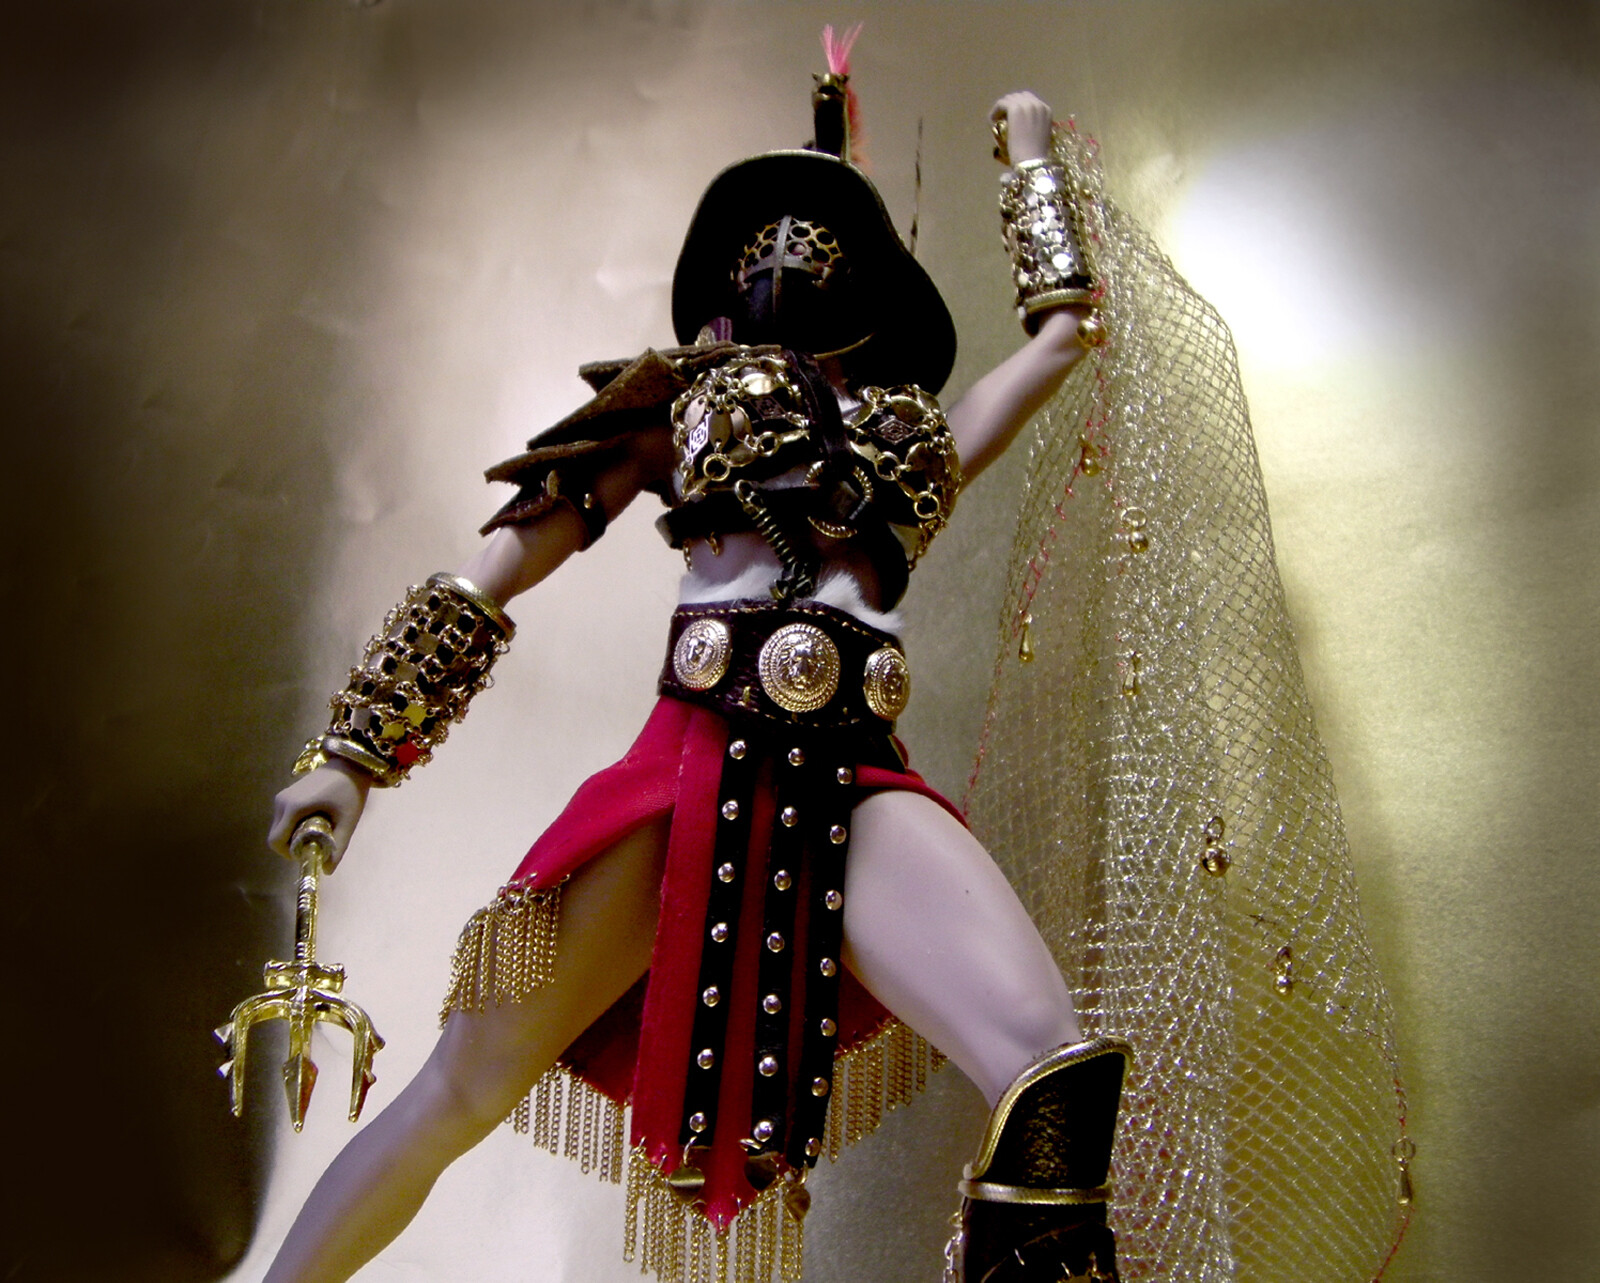 Costume №17 for Phicen doll. Gladiator girl. - DOLL IN ARMOR